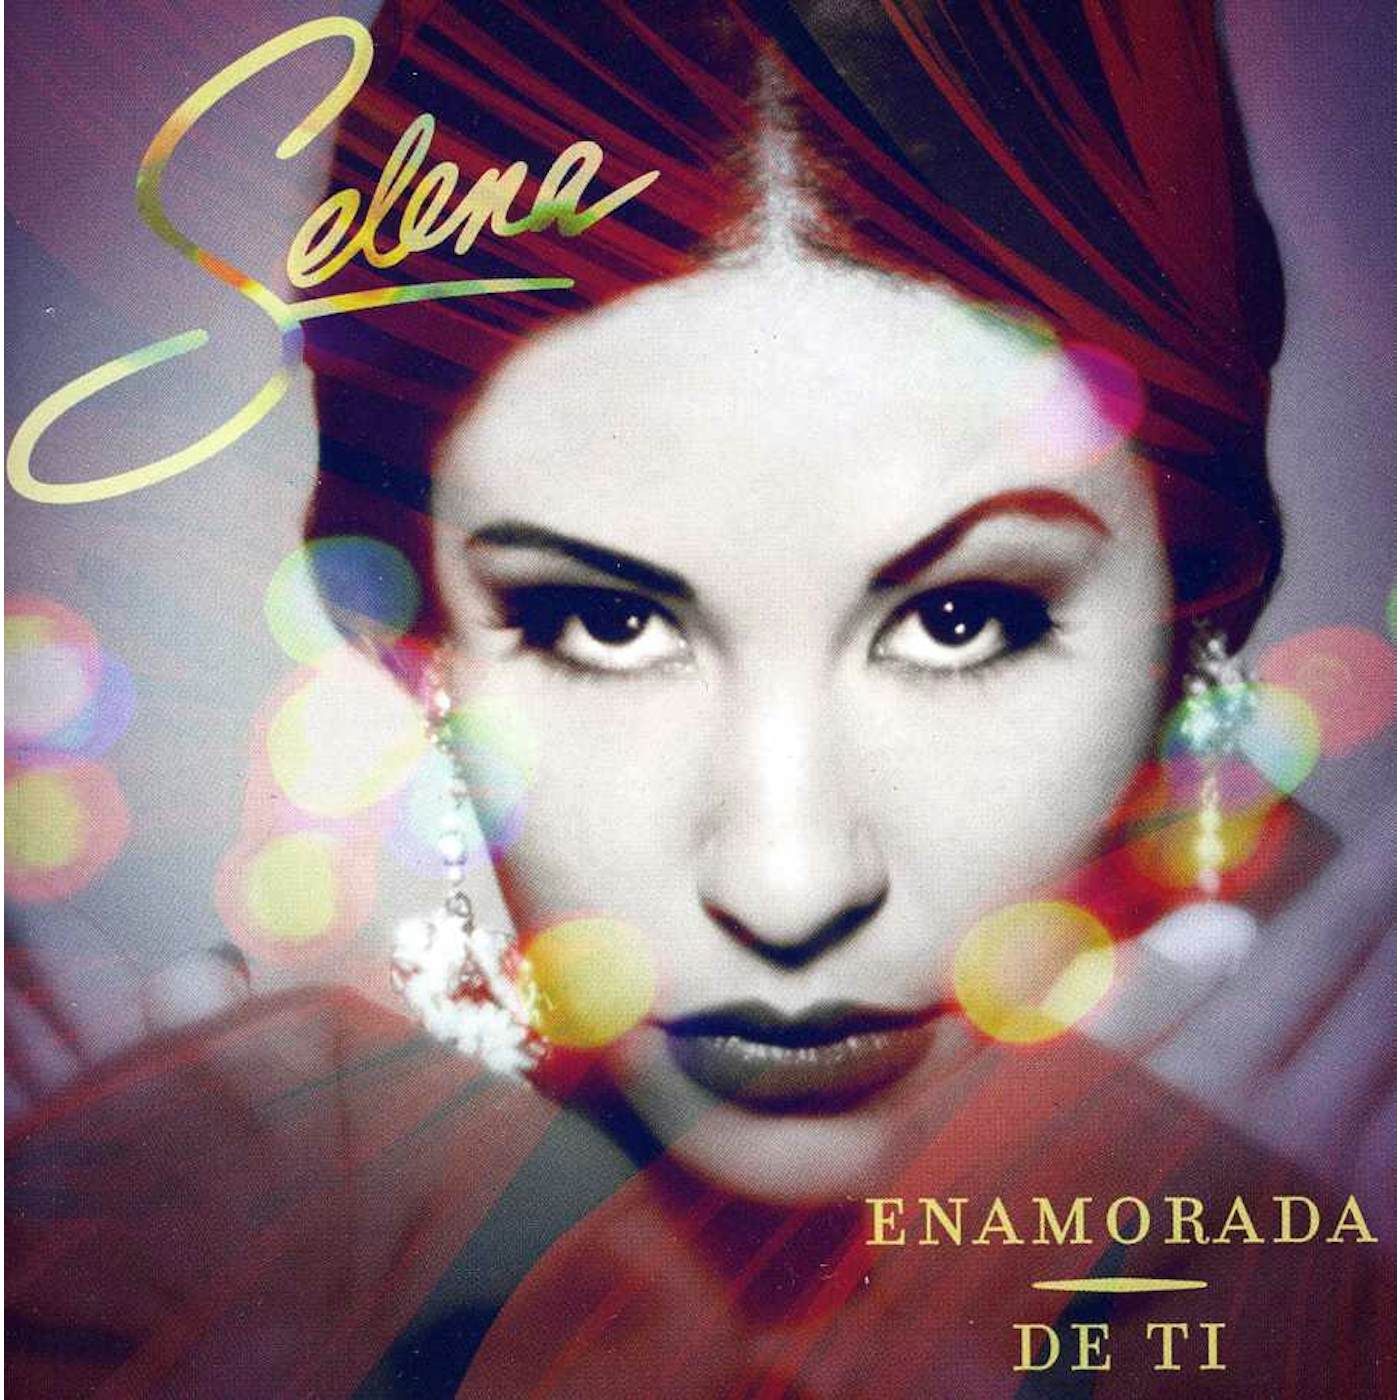 Selena ENAMORADA DE TI CD